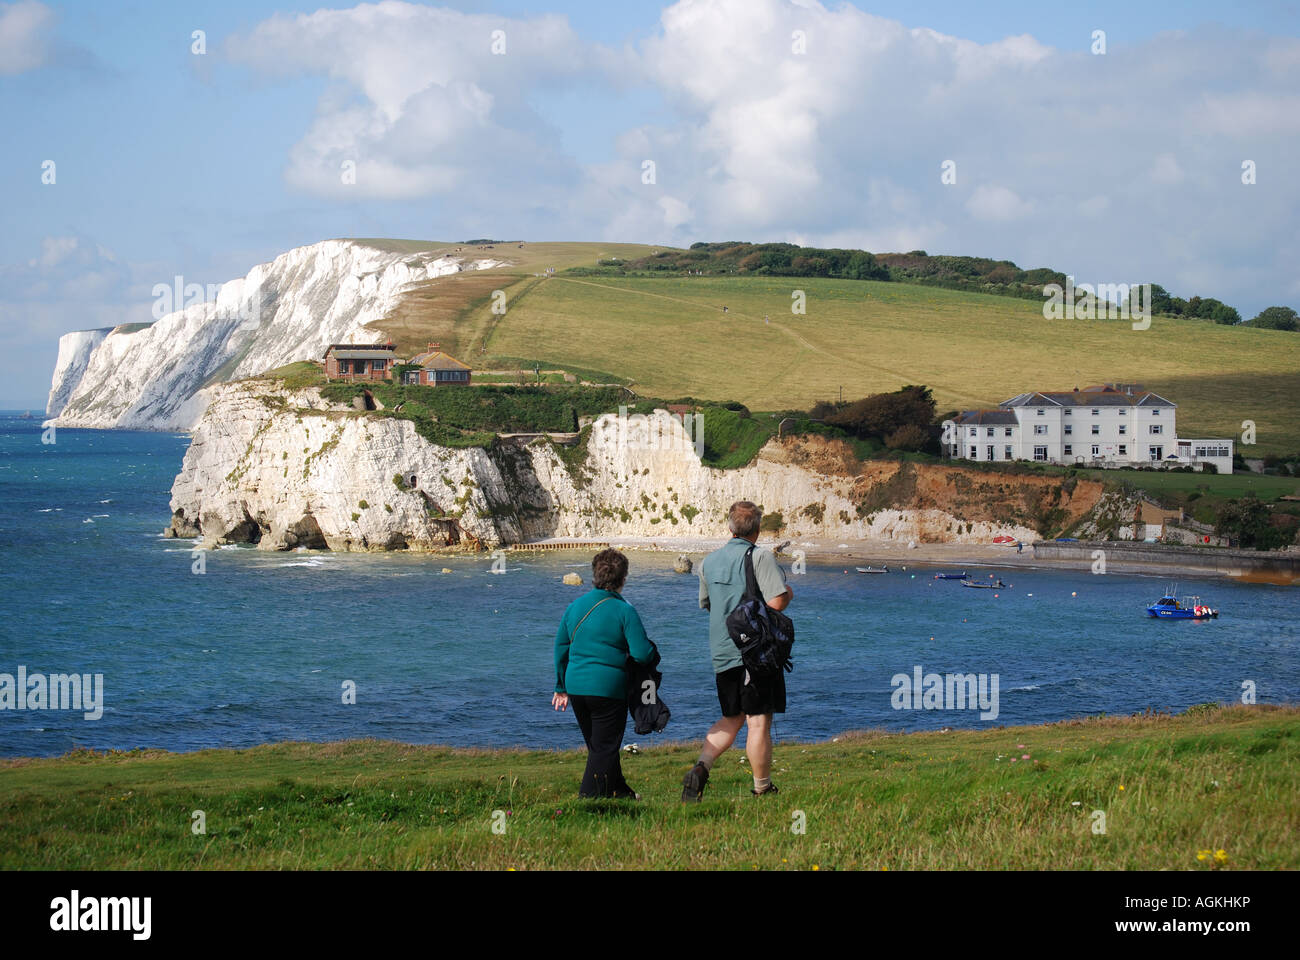 Les promeneurs sur le chemin des falaises de craie de près de Freshwater Bay, île de Wight, Angleterre, Royaume-Uni Banque D'Images